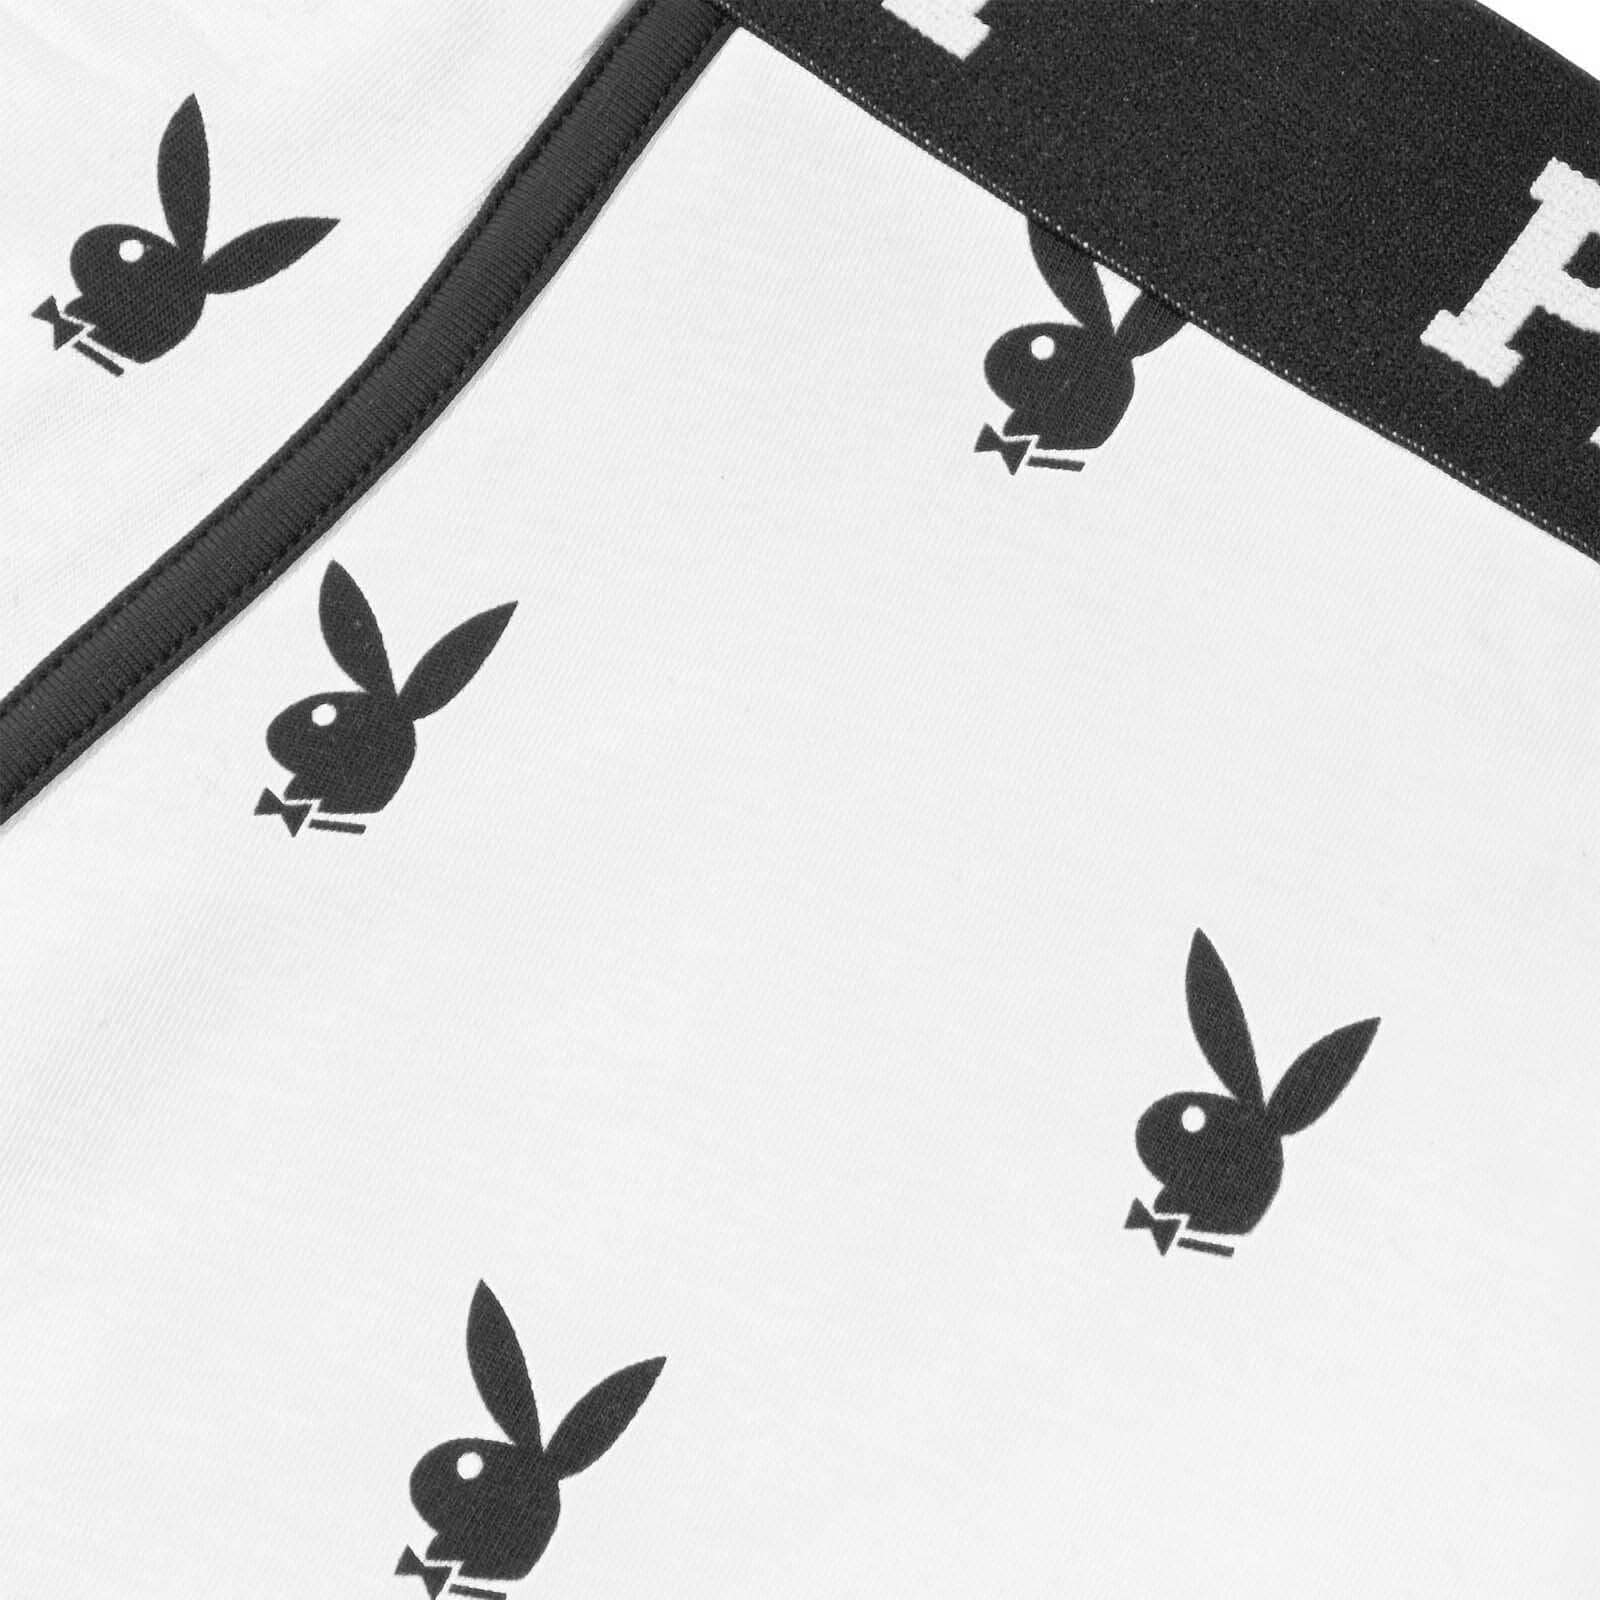 Designer Underwear for Men  Rabbit Head Boxer Briefs by Playboy